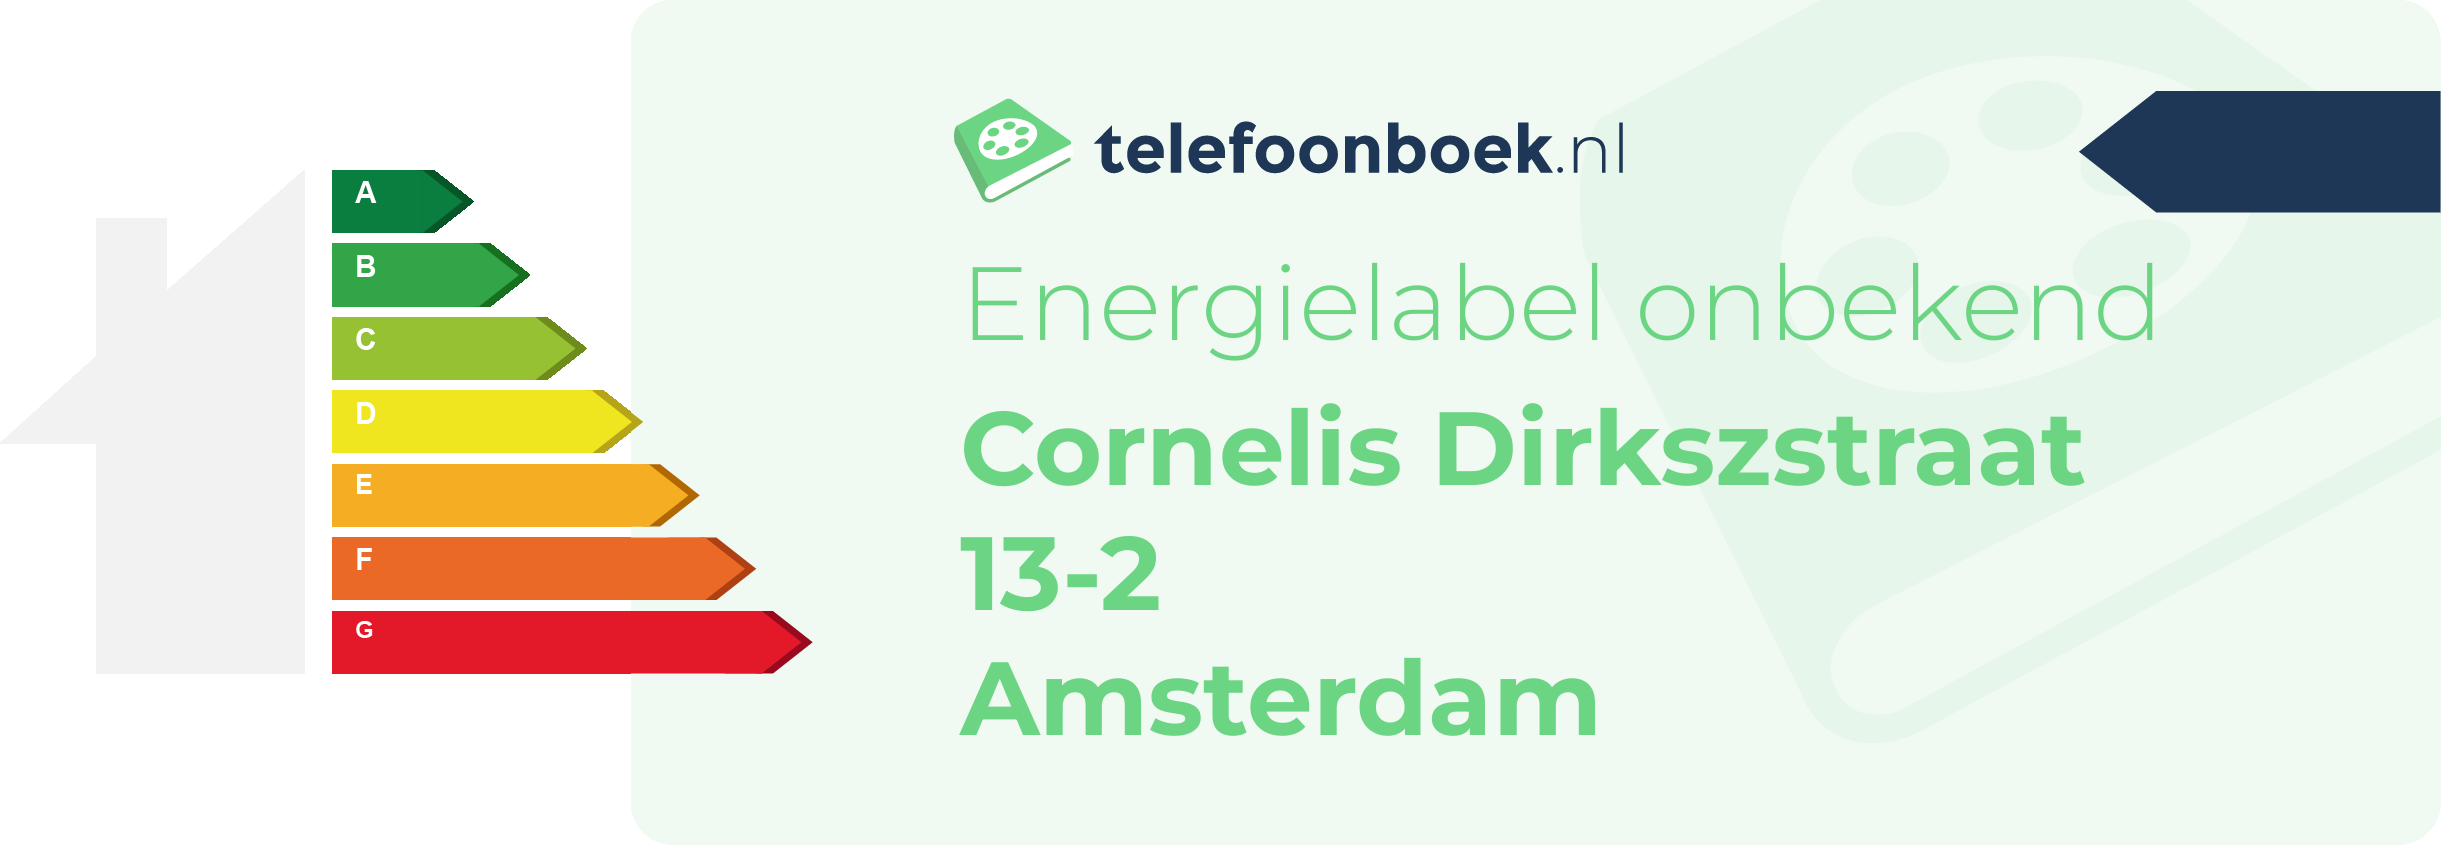 Energielabel Cornelis Dirkszstraat 13-2 Amsterdam